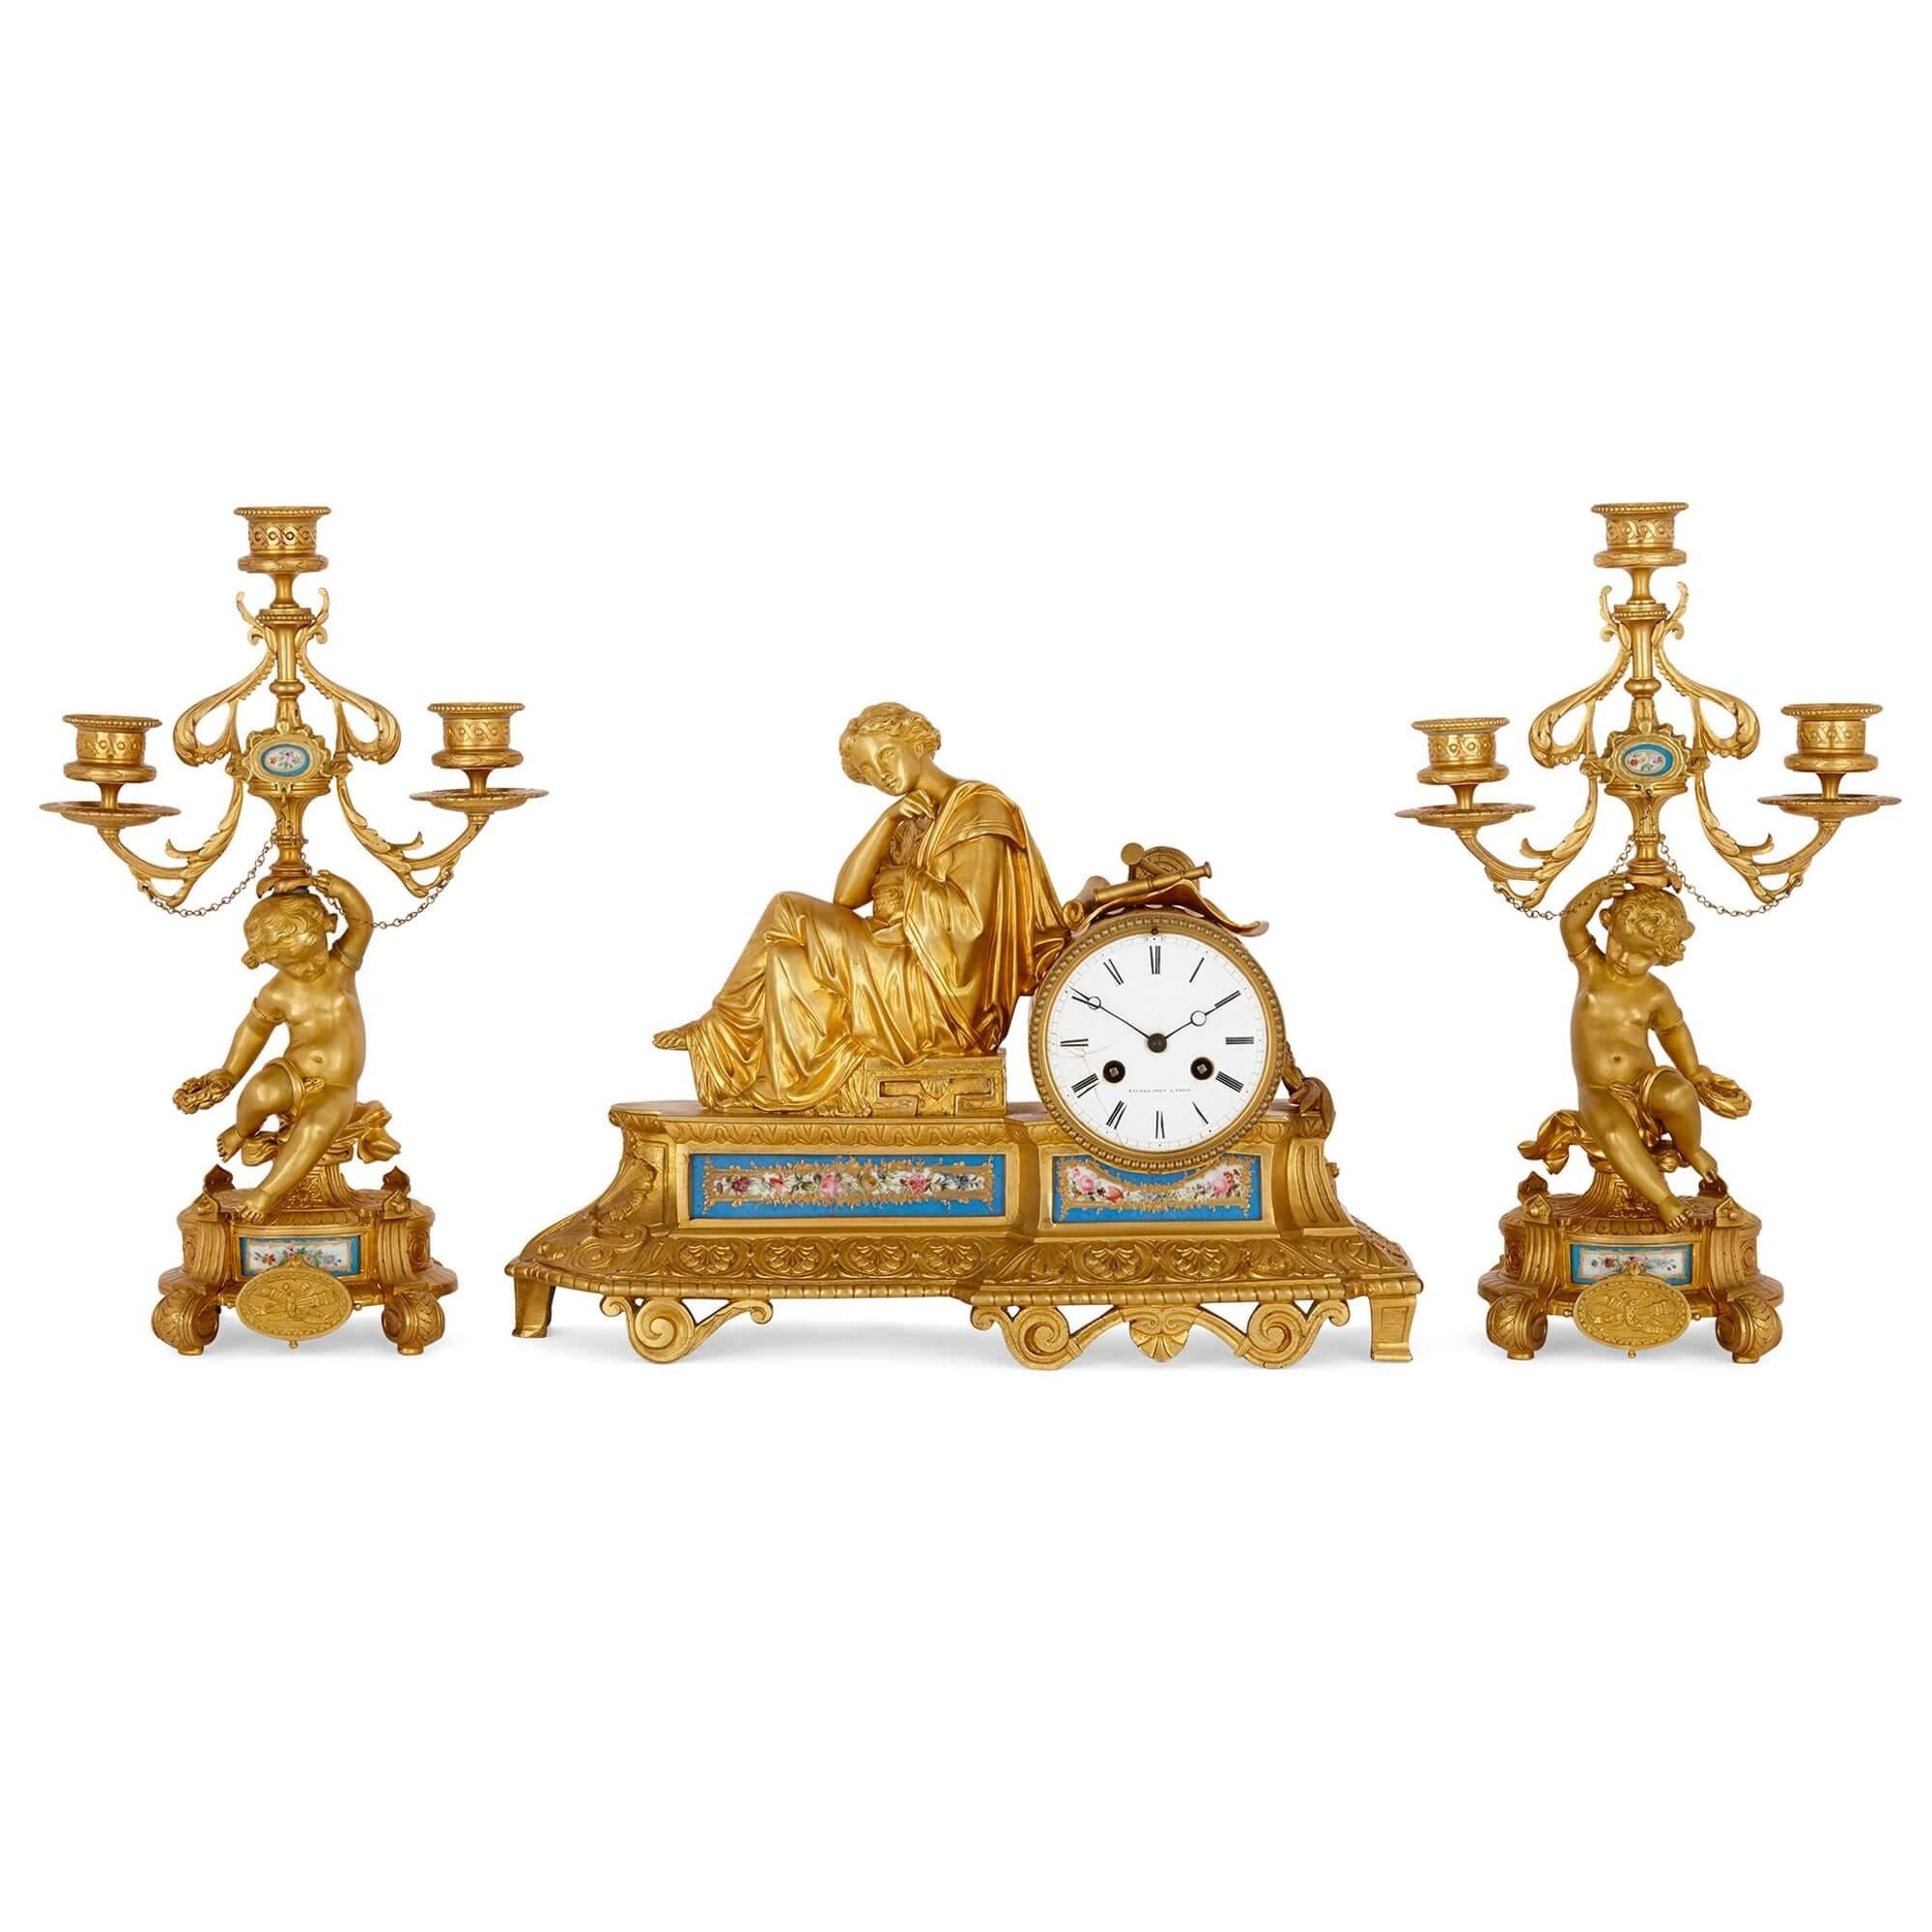 Ensemble de trois pièces d'horloges françaises en porcelaine et bronze doré
France, fin du XIXe siècle
Horloge : hauteur 27 cm, largeur 36,5 cm, profondeur 12 cm
Candélabre : hauteur 33 cm, largeur 20 cm, profondeur 11,5 cm

Ce bel ensemble